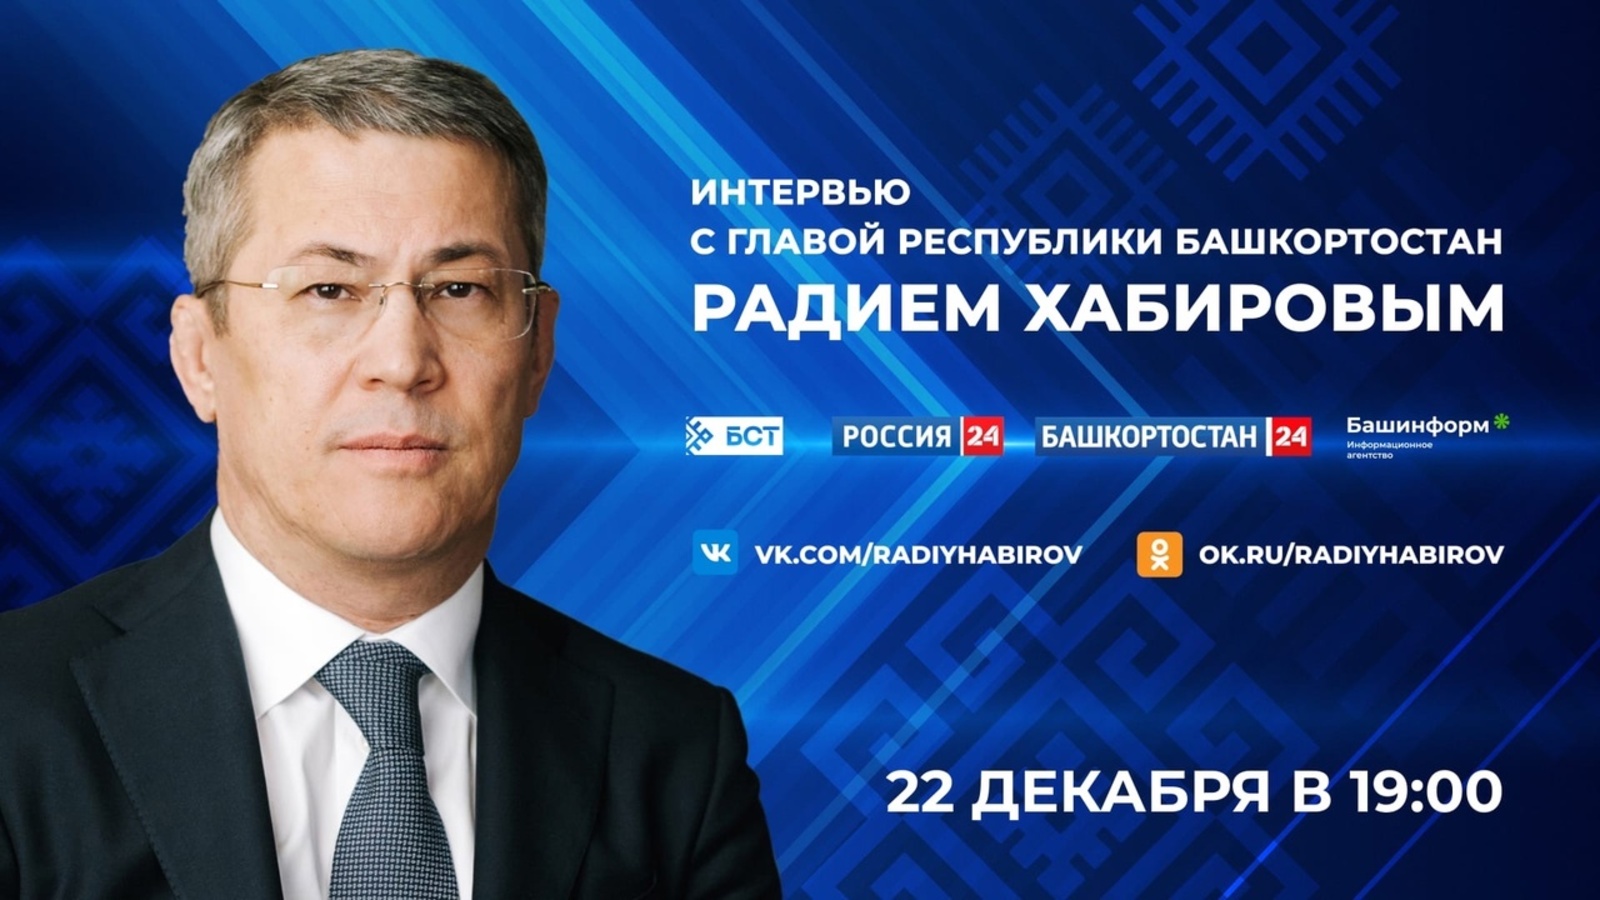 Радий Хабиров даст интервью государственным СМИ республики